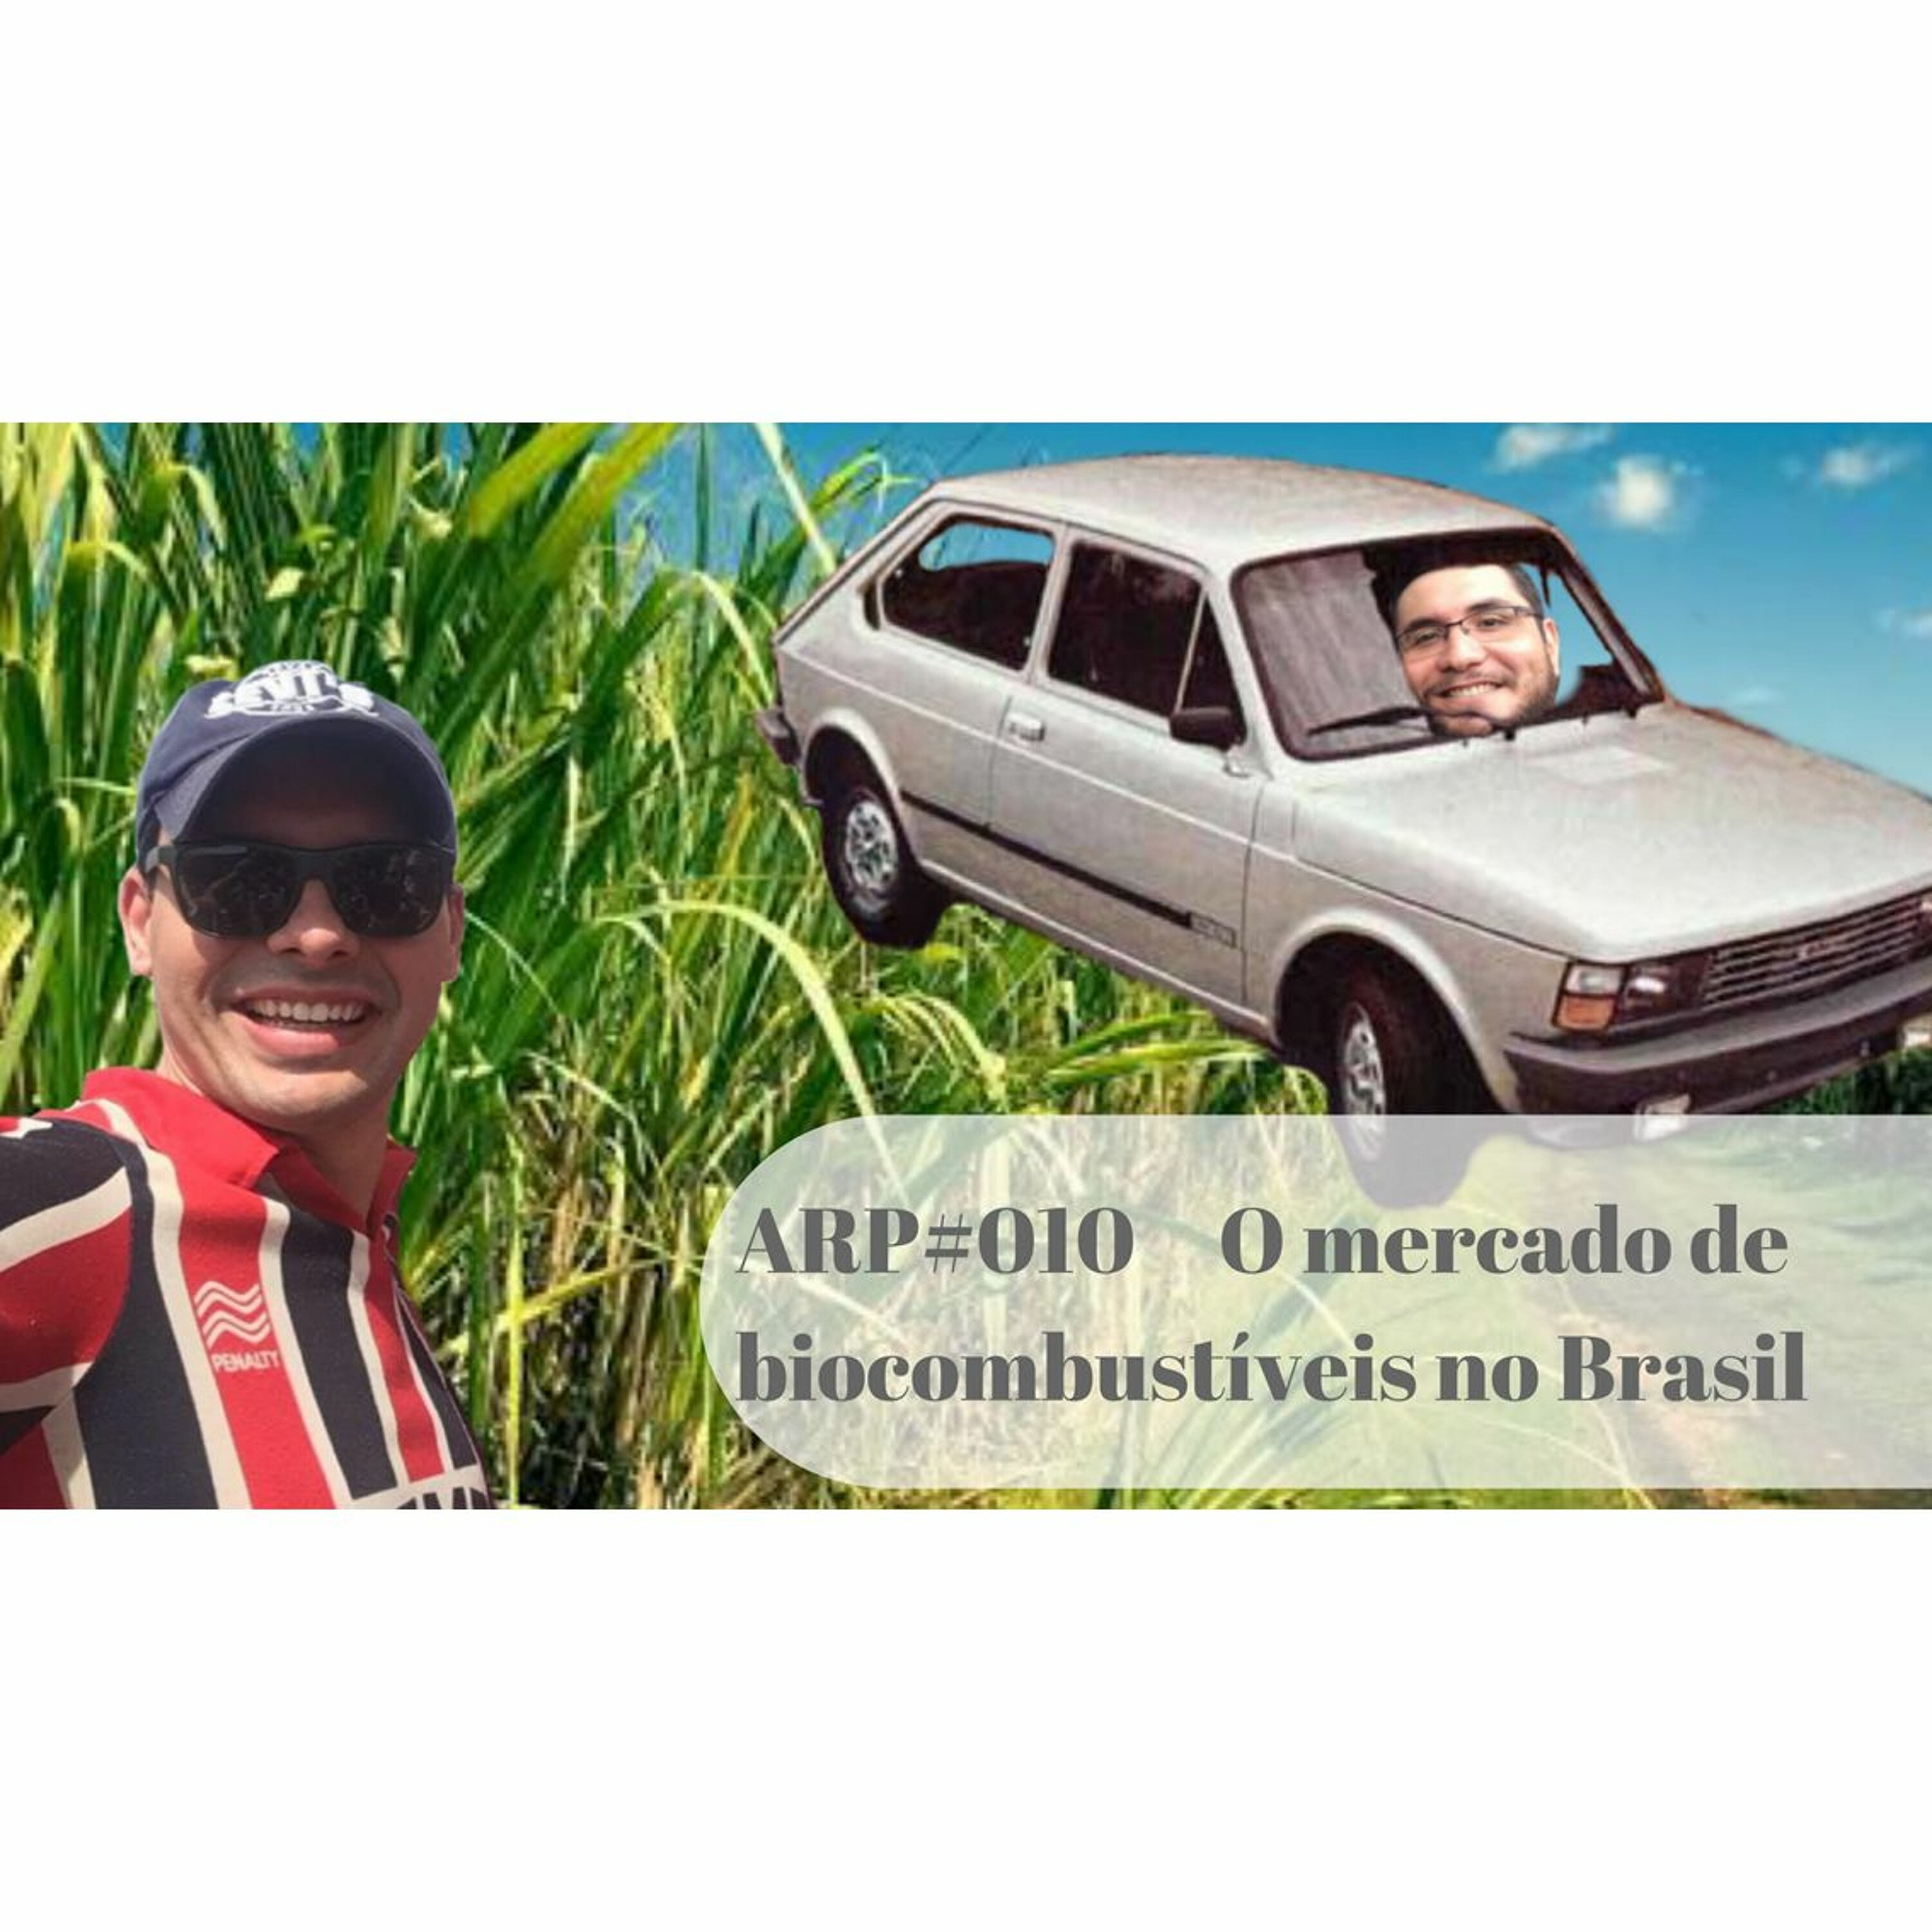 ARP#010 - O mercado de biocombustíveis no Brasil